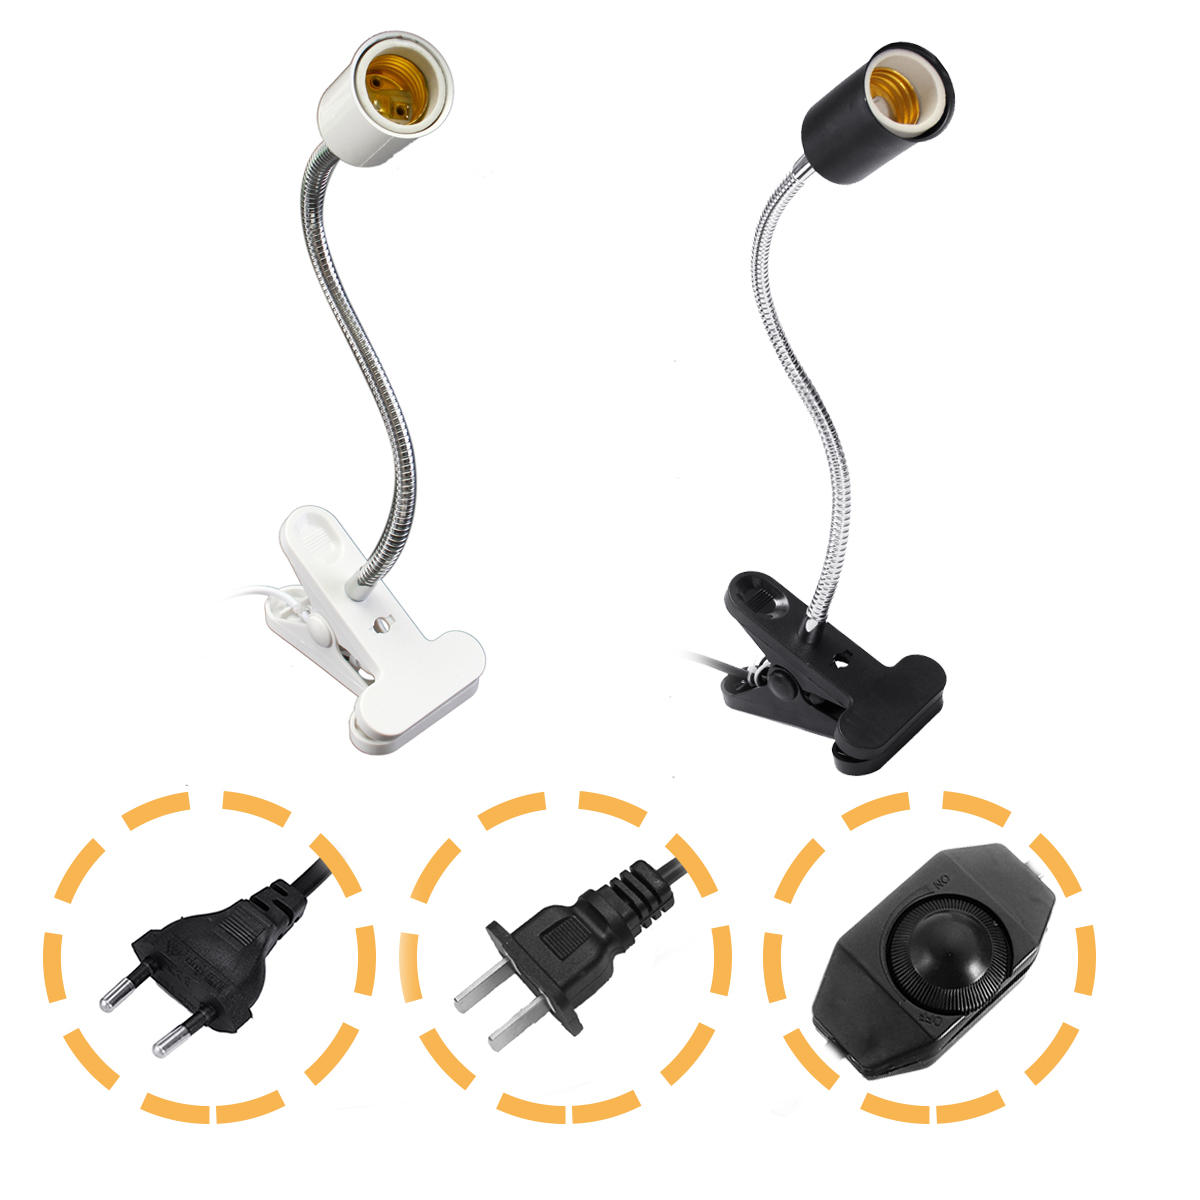 30 CM E27 Flexibele Huisdier Warmte Gloeilamp Adapter Lamphouder Socket met Clip Dimmen Schakelaar